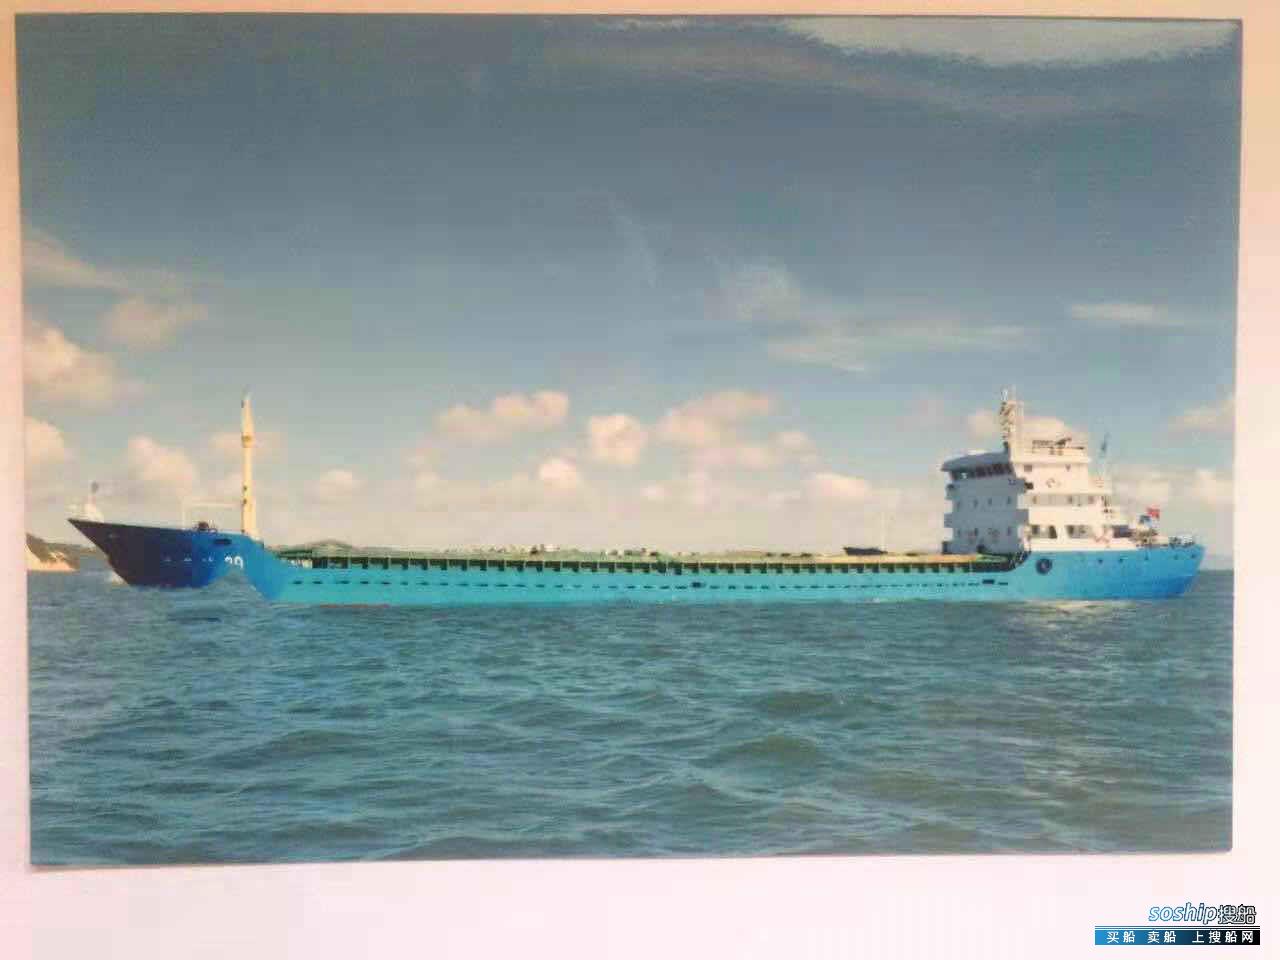 杂货船 出售3077吨杂货船